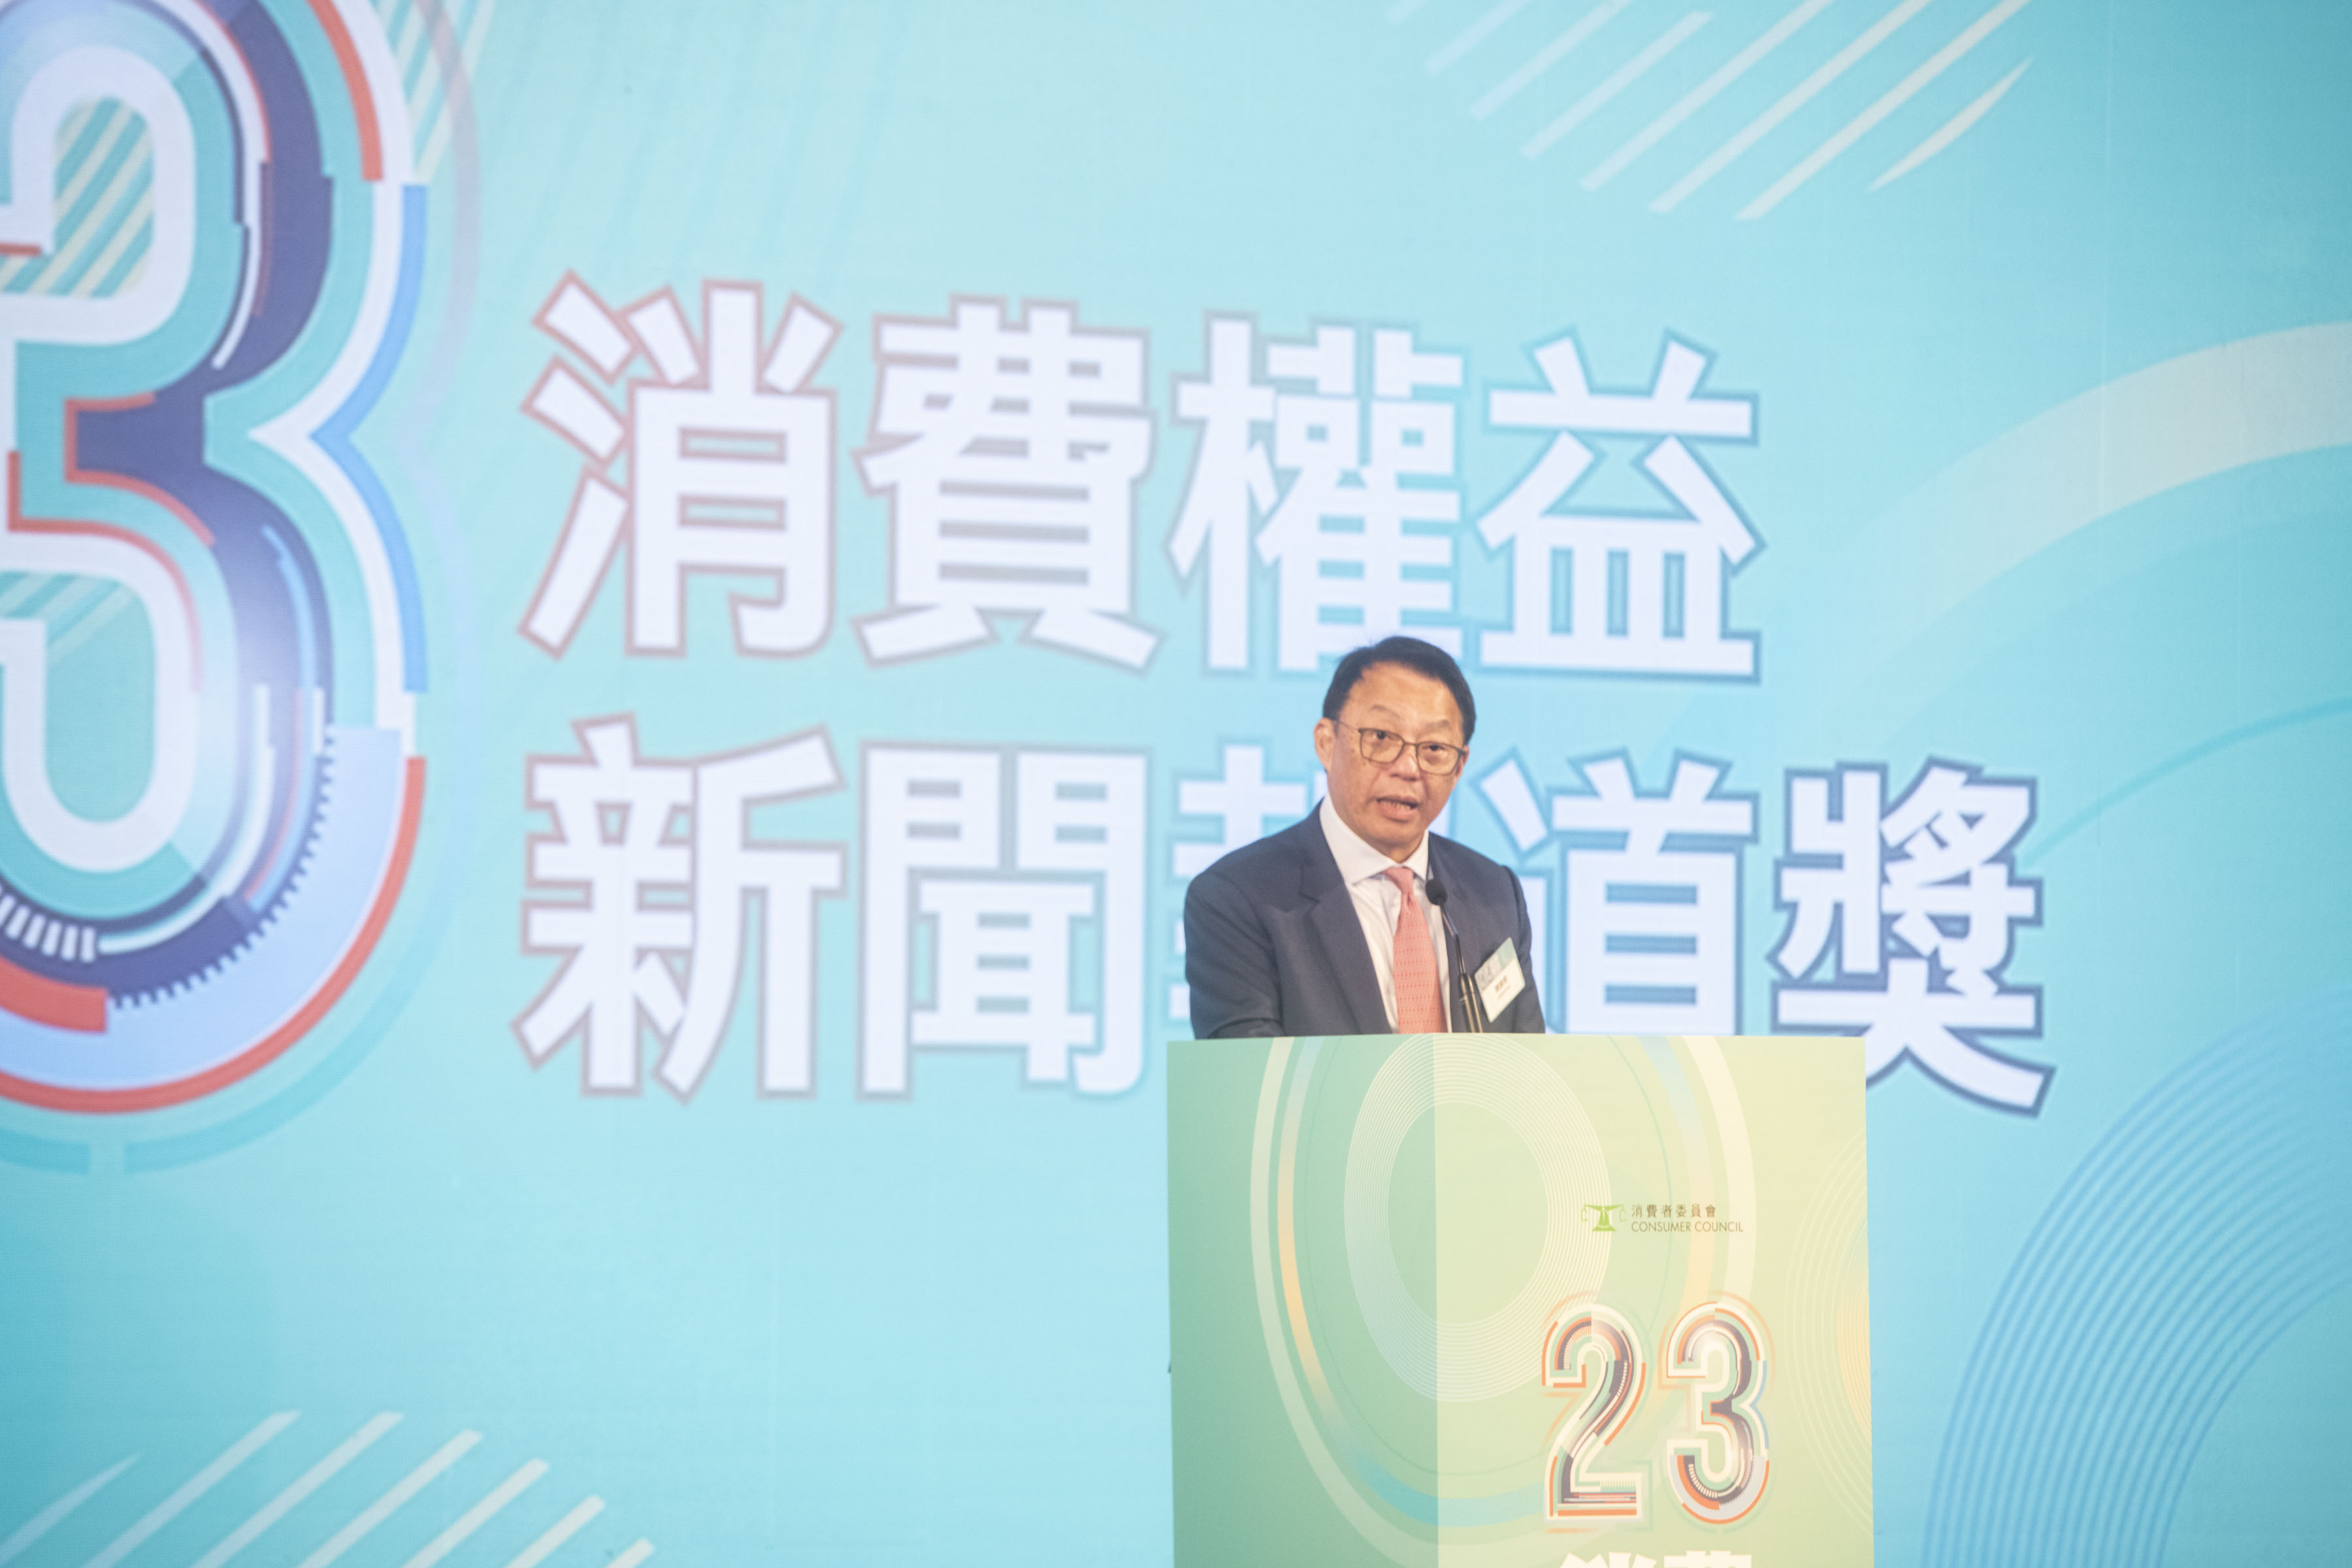 消费者委员会主席陈锦荣先生致欢迎辞